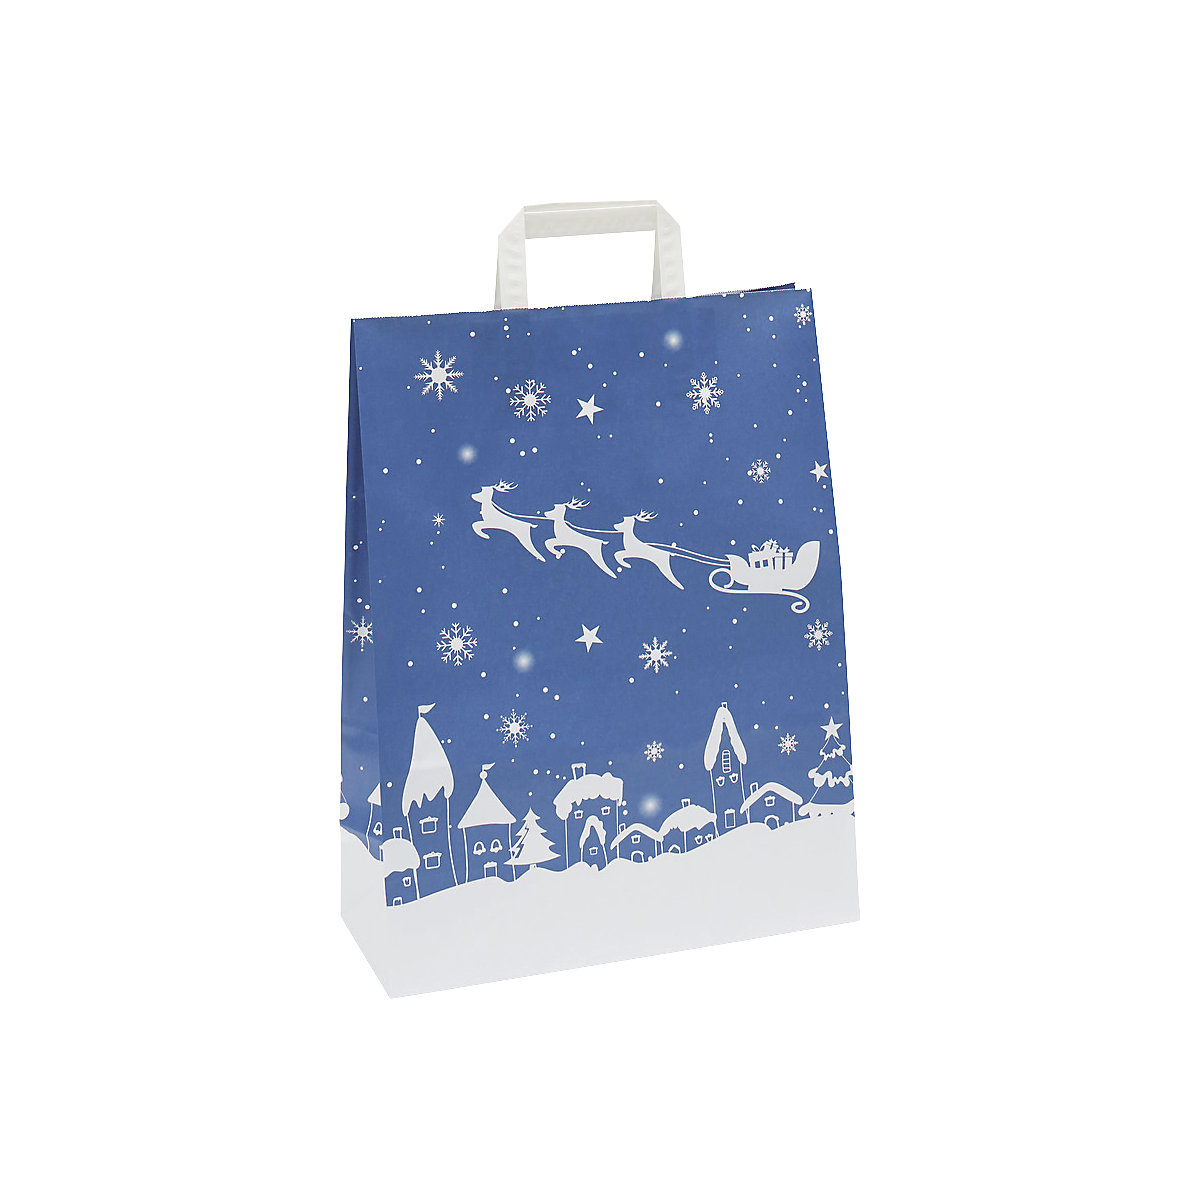 Papiertragetasche Weihnachten, blau/weiß gemustert, VE 25 Stk, LxBxH 320 x 140 x 420 mm, ab 10 VE-1